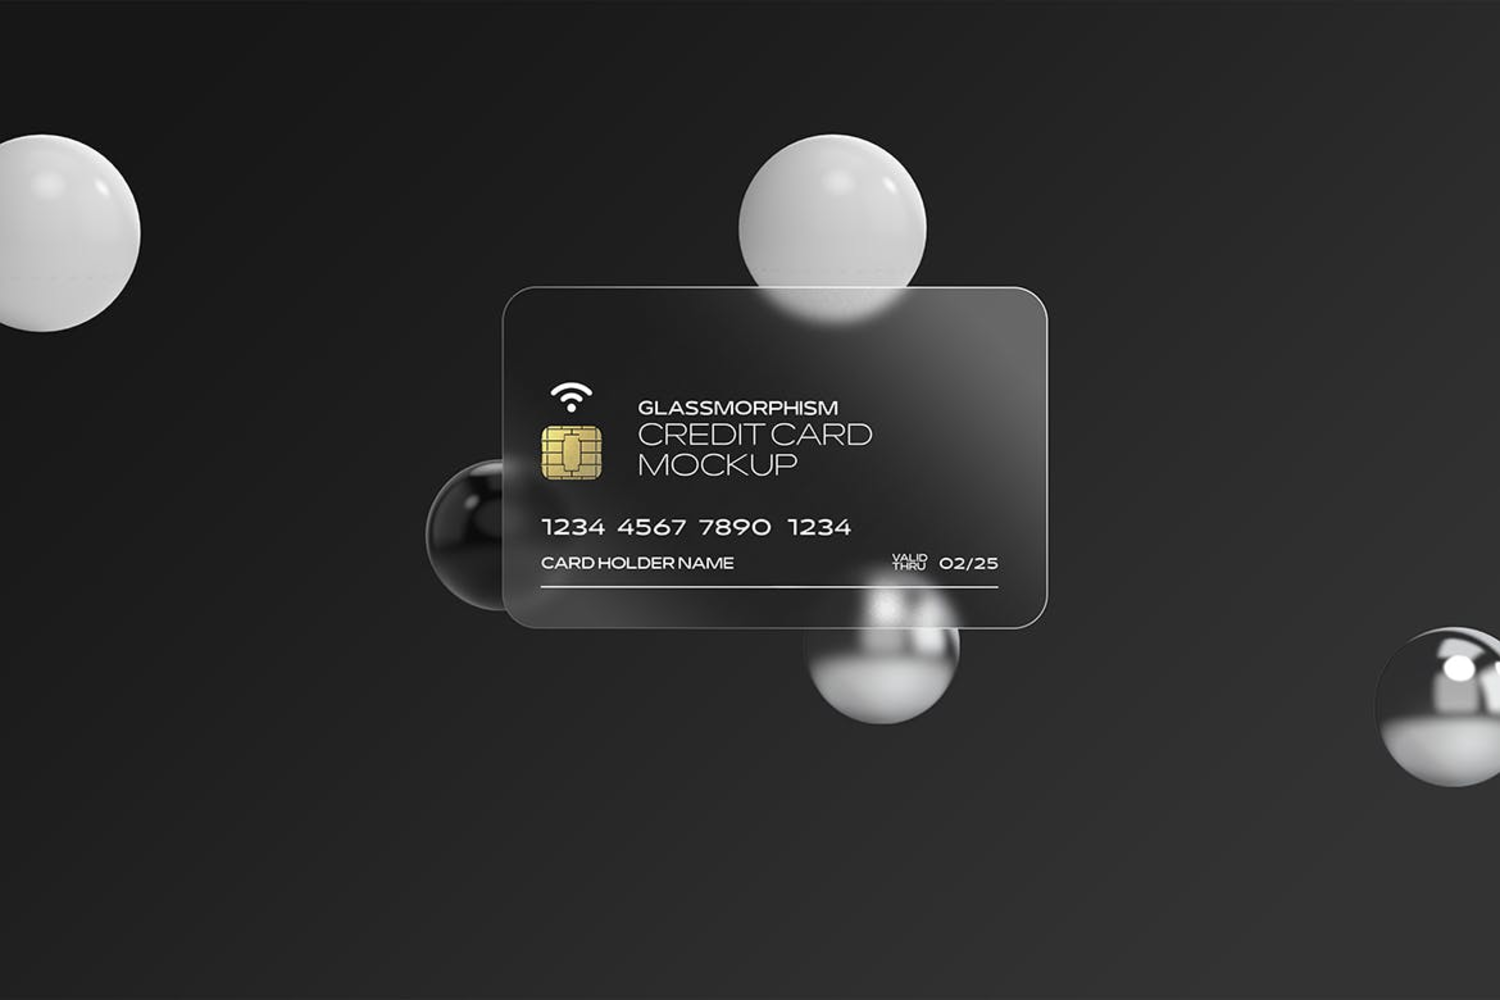 4856 6款玻璃磨砂半透明硫酸纸名片卡片设计贴图ps样机素材展示效果图 Glass Effect Credit Card Mockups@GOOODME.COM